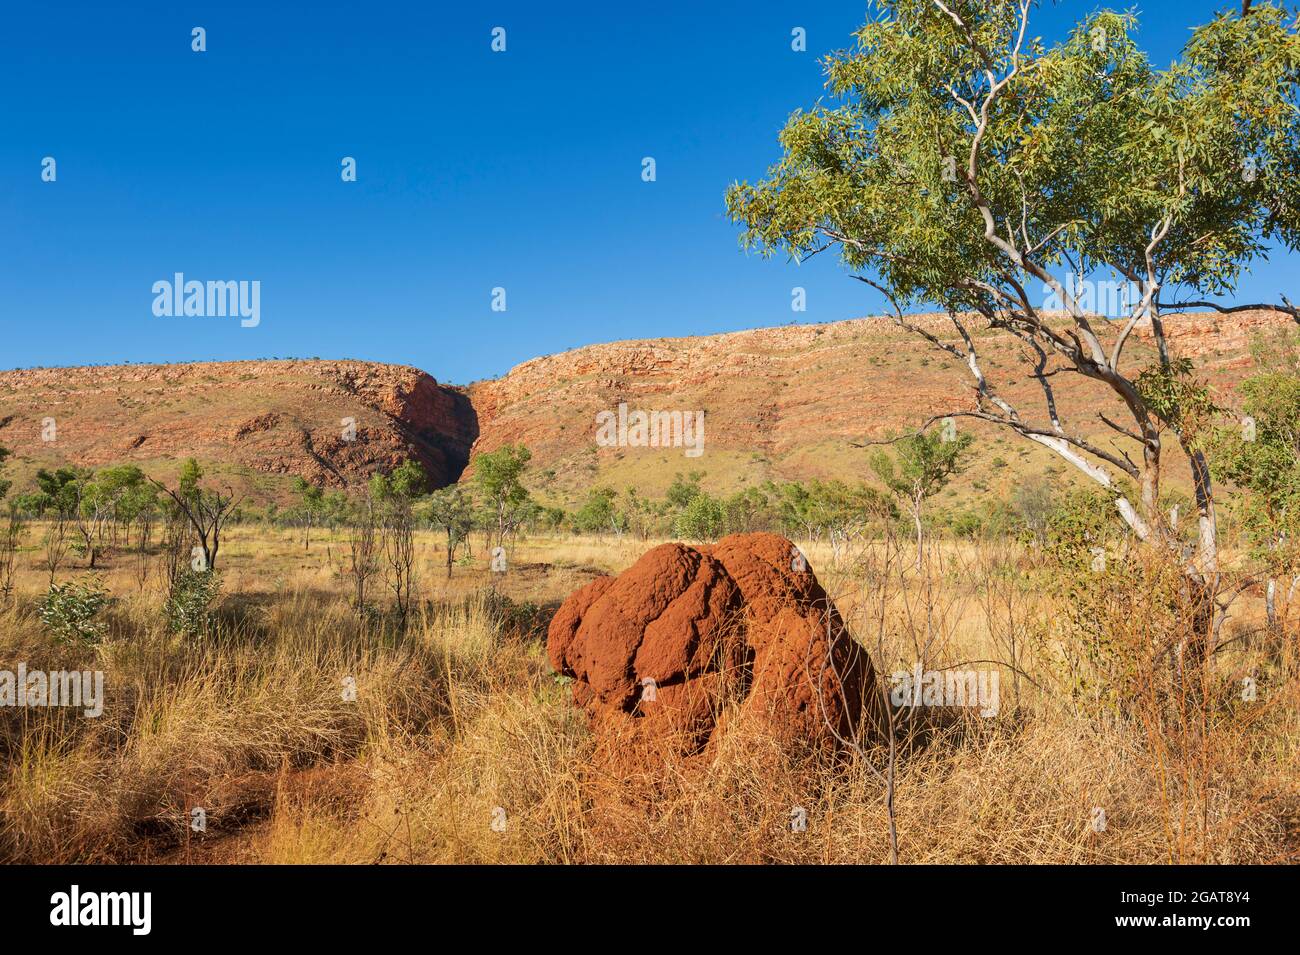 Vue panoramique d'un termite rouge dans la savane, Mornington Wilderness Camp, région de Kimberley, Australie occidentale, Australie occidentale, Australie Banque D'Images